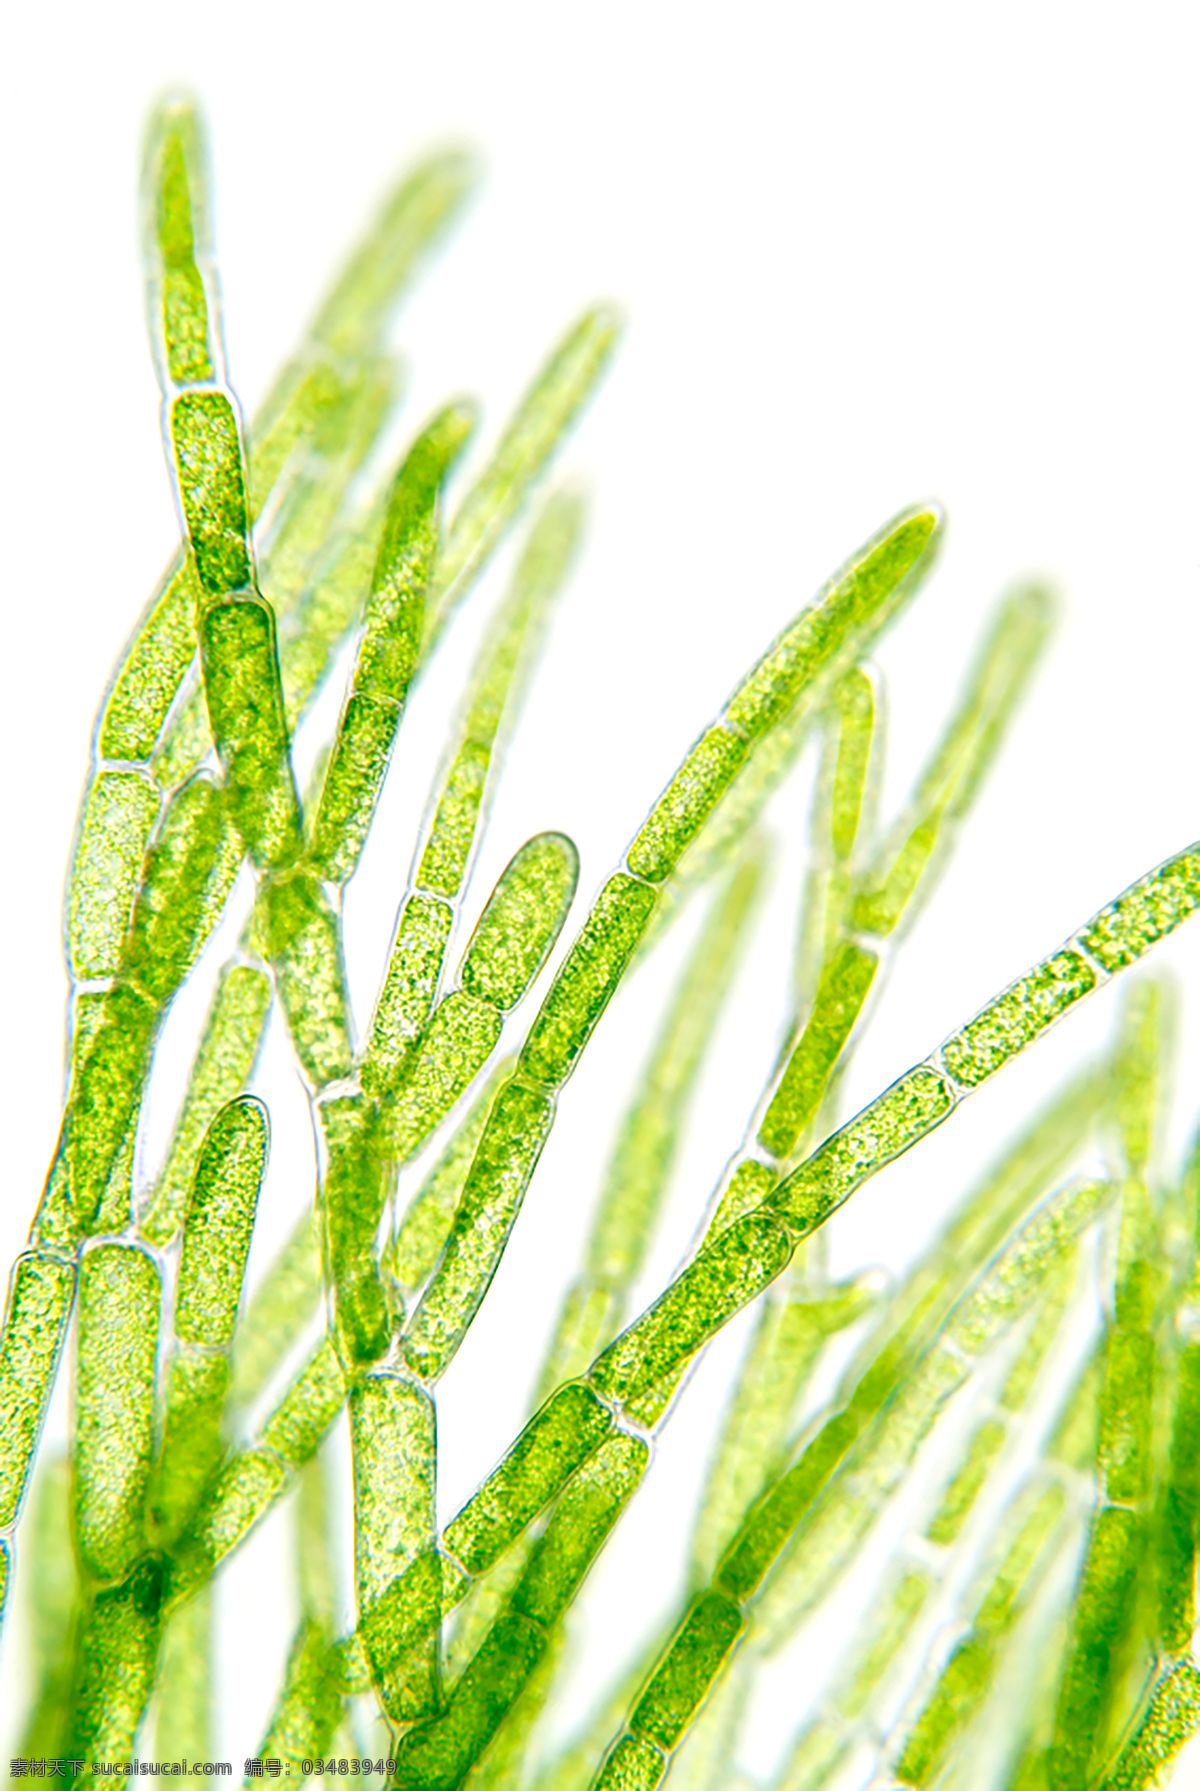 细胞结构 抽象纹理 绿色底图 抽象花纹 海藻类 绿叶